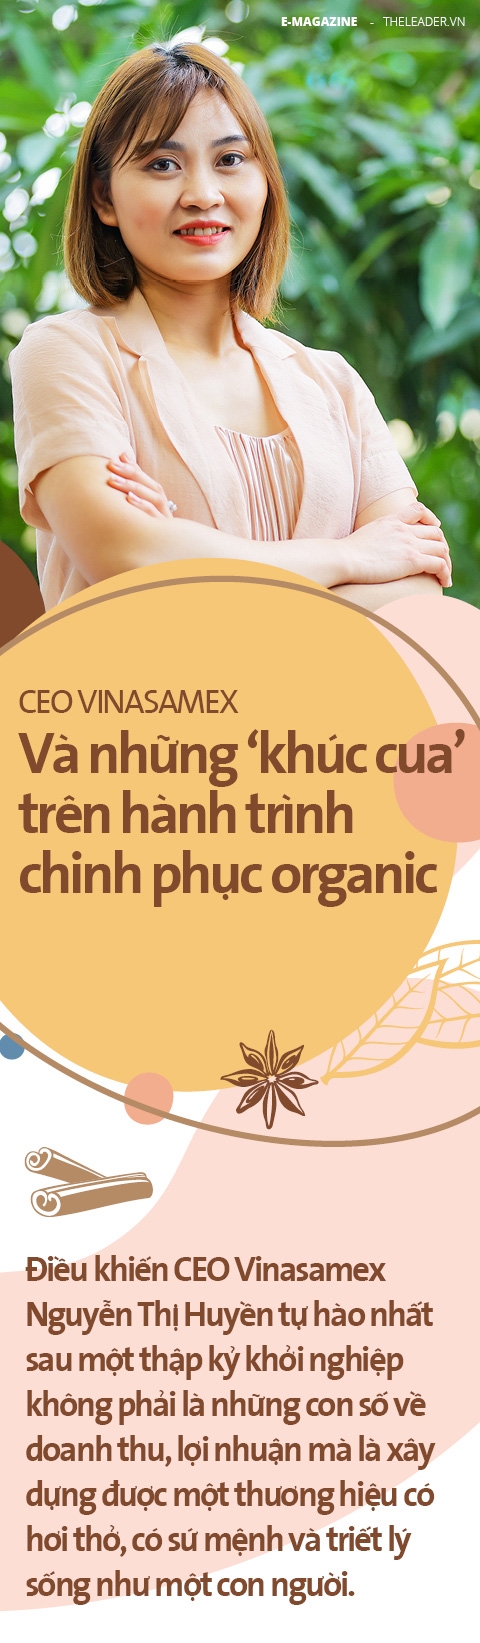 CEO Vinasamex và những ‘khúc cua’ trên hành trình chinh phục organic